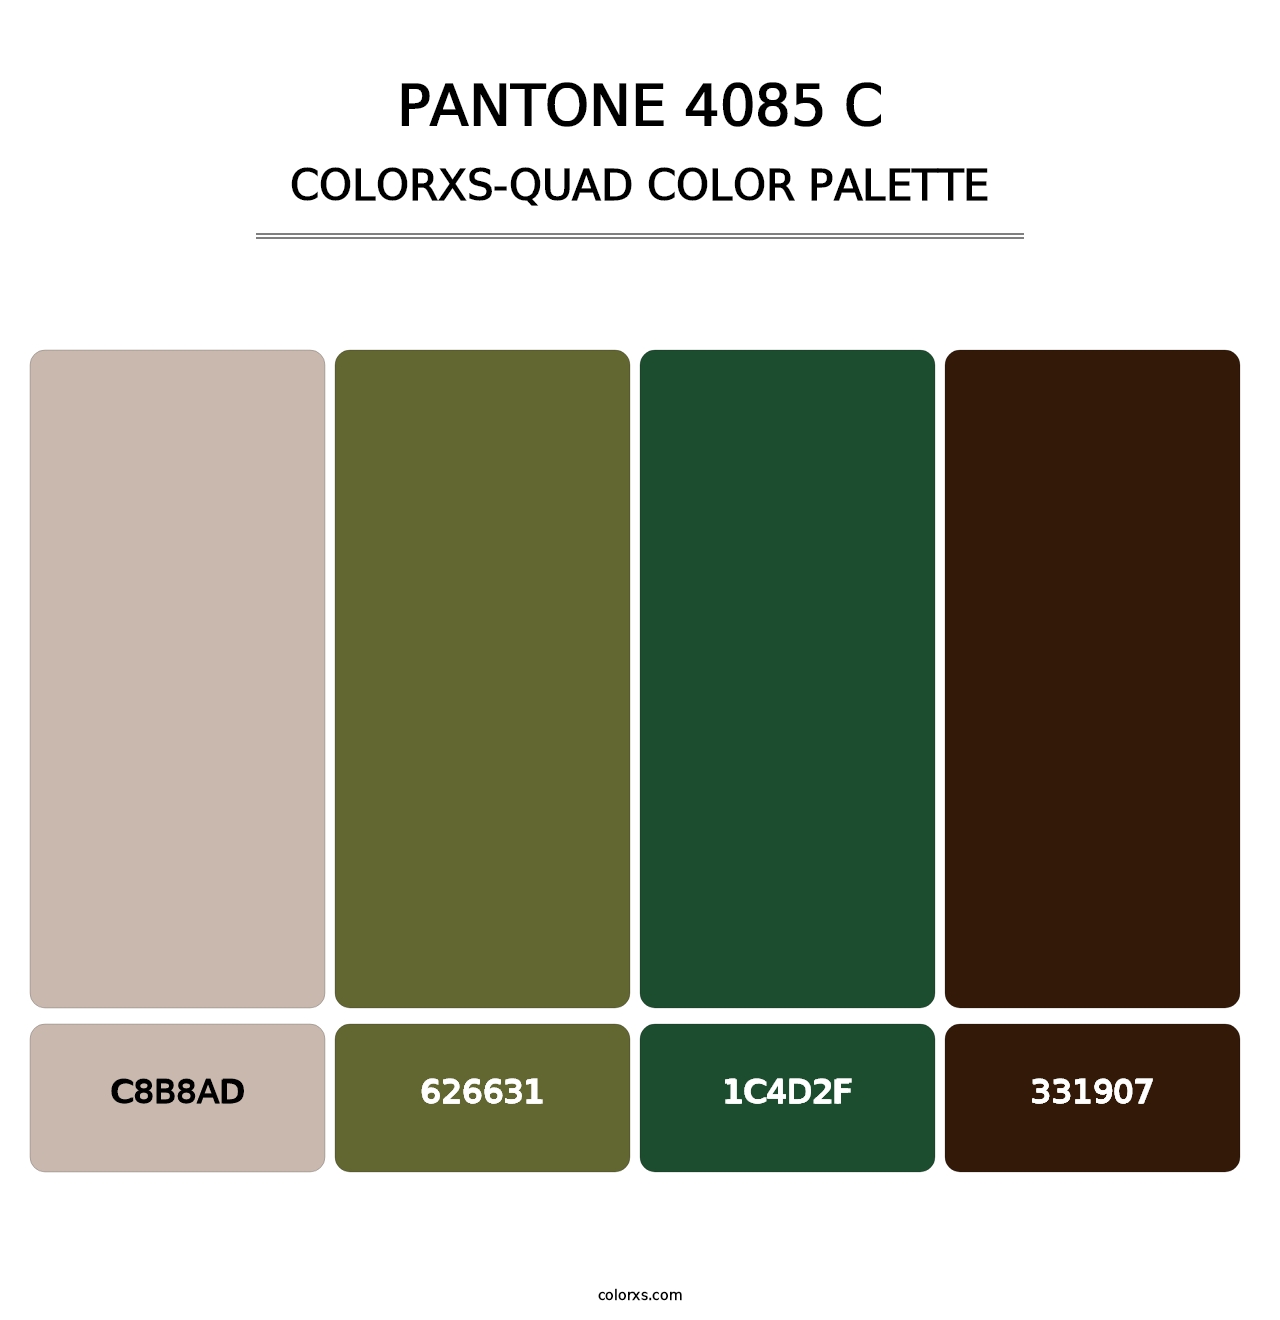 PANTONE 4085 C - Colorxs Quad Palette